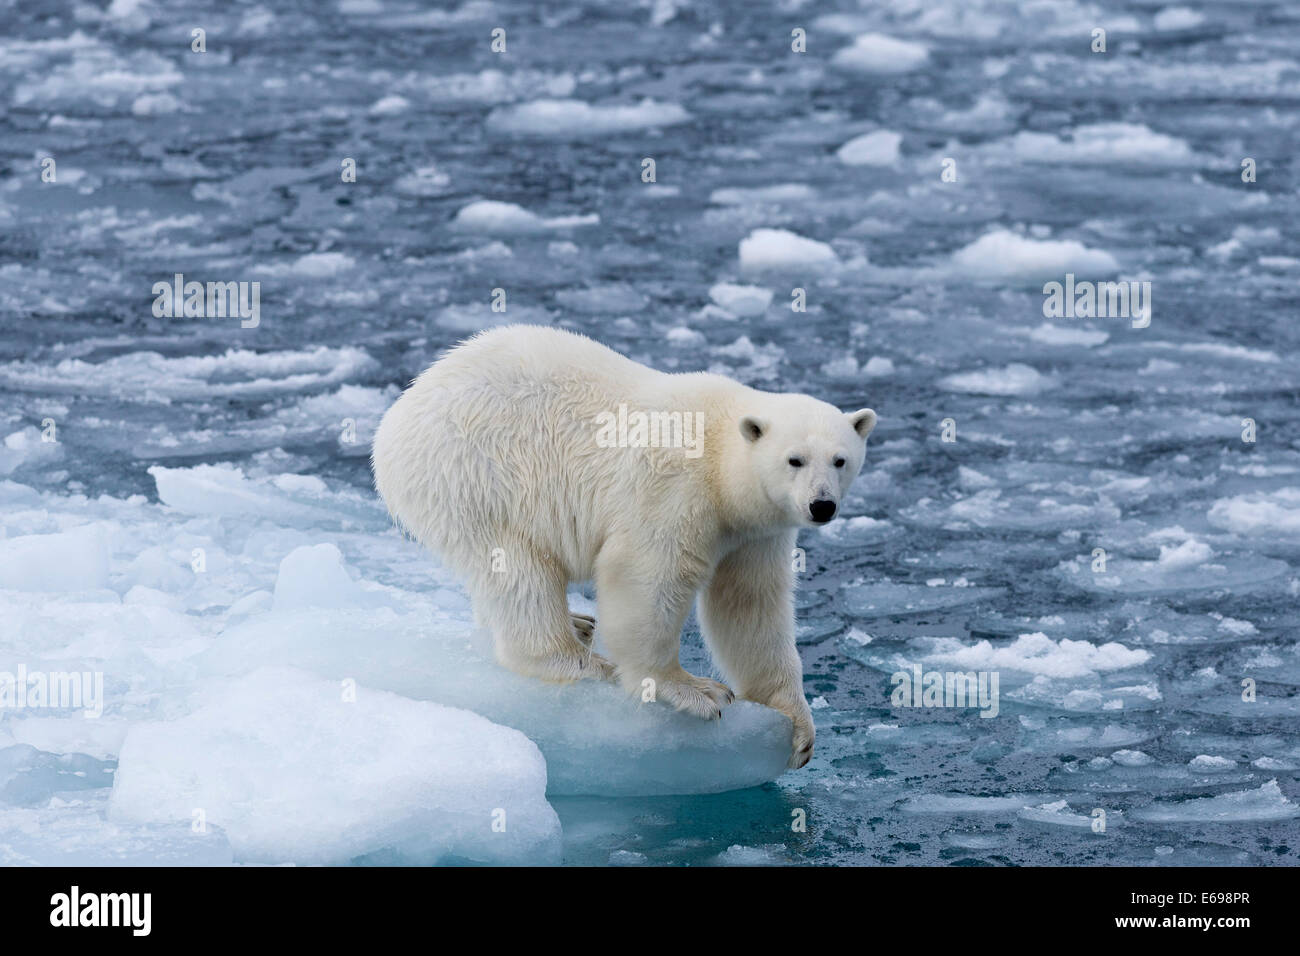 El oso polar (Ursus maritimus) de pie en el borde de un témpano, Spitsbergen, Islas Svalbard y Jan Mayen, Svalbard, Noruega Foto de stock